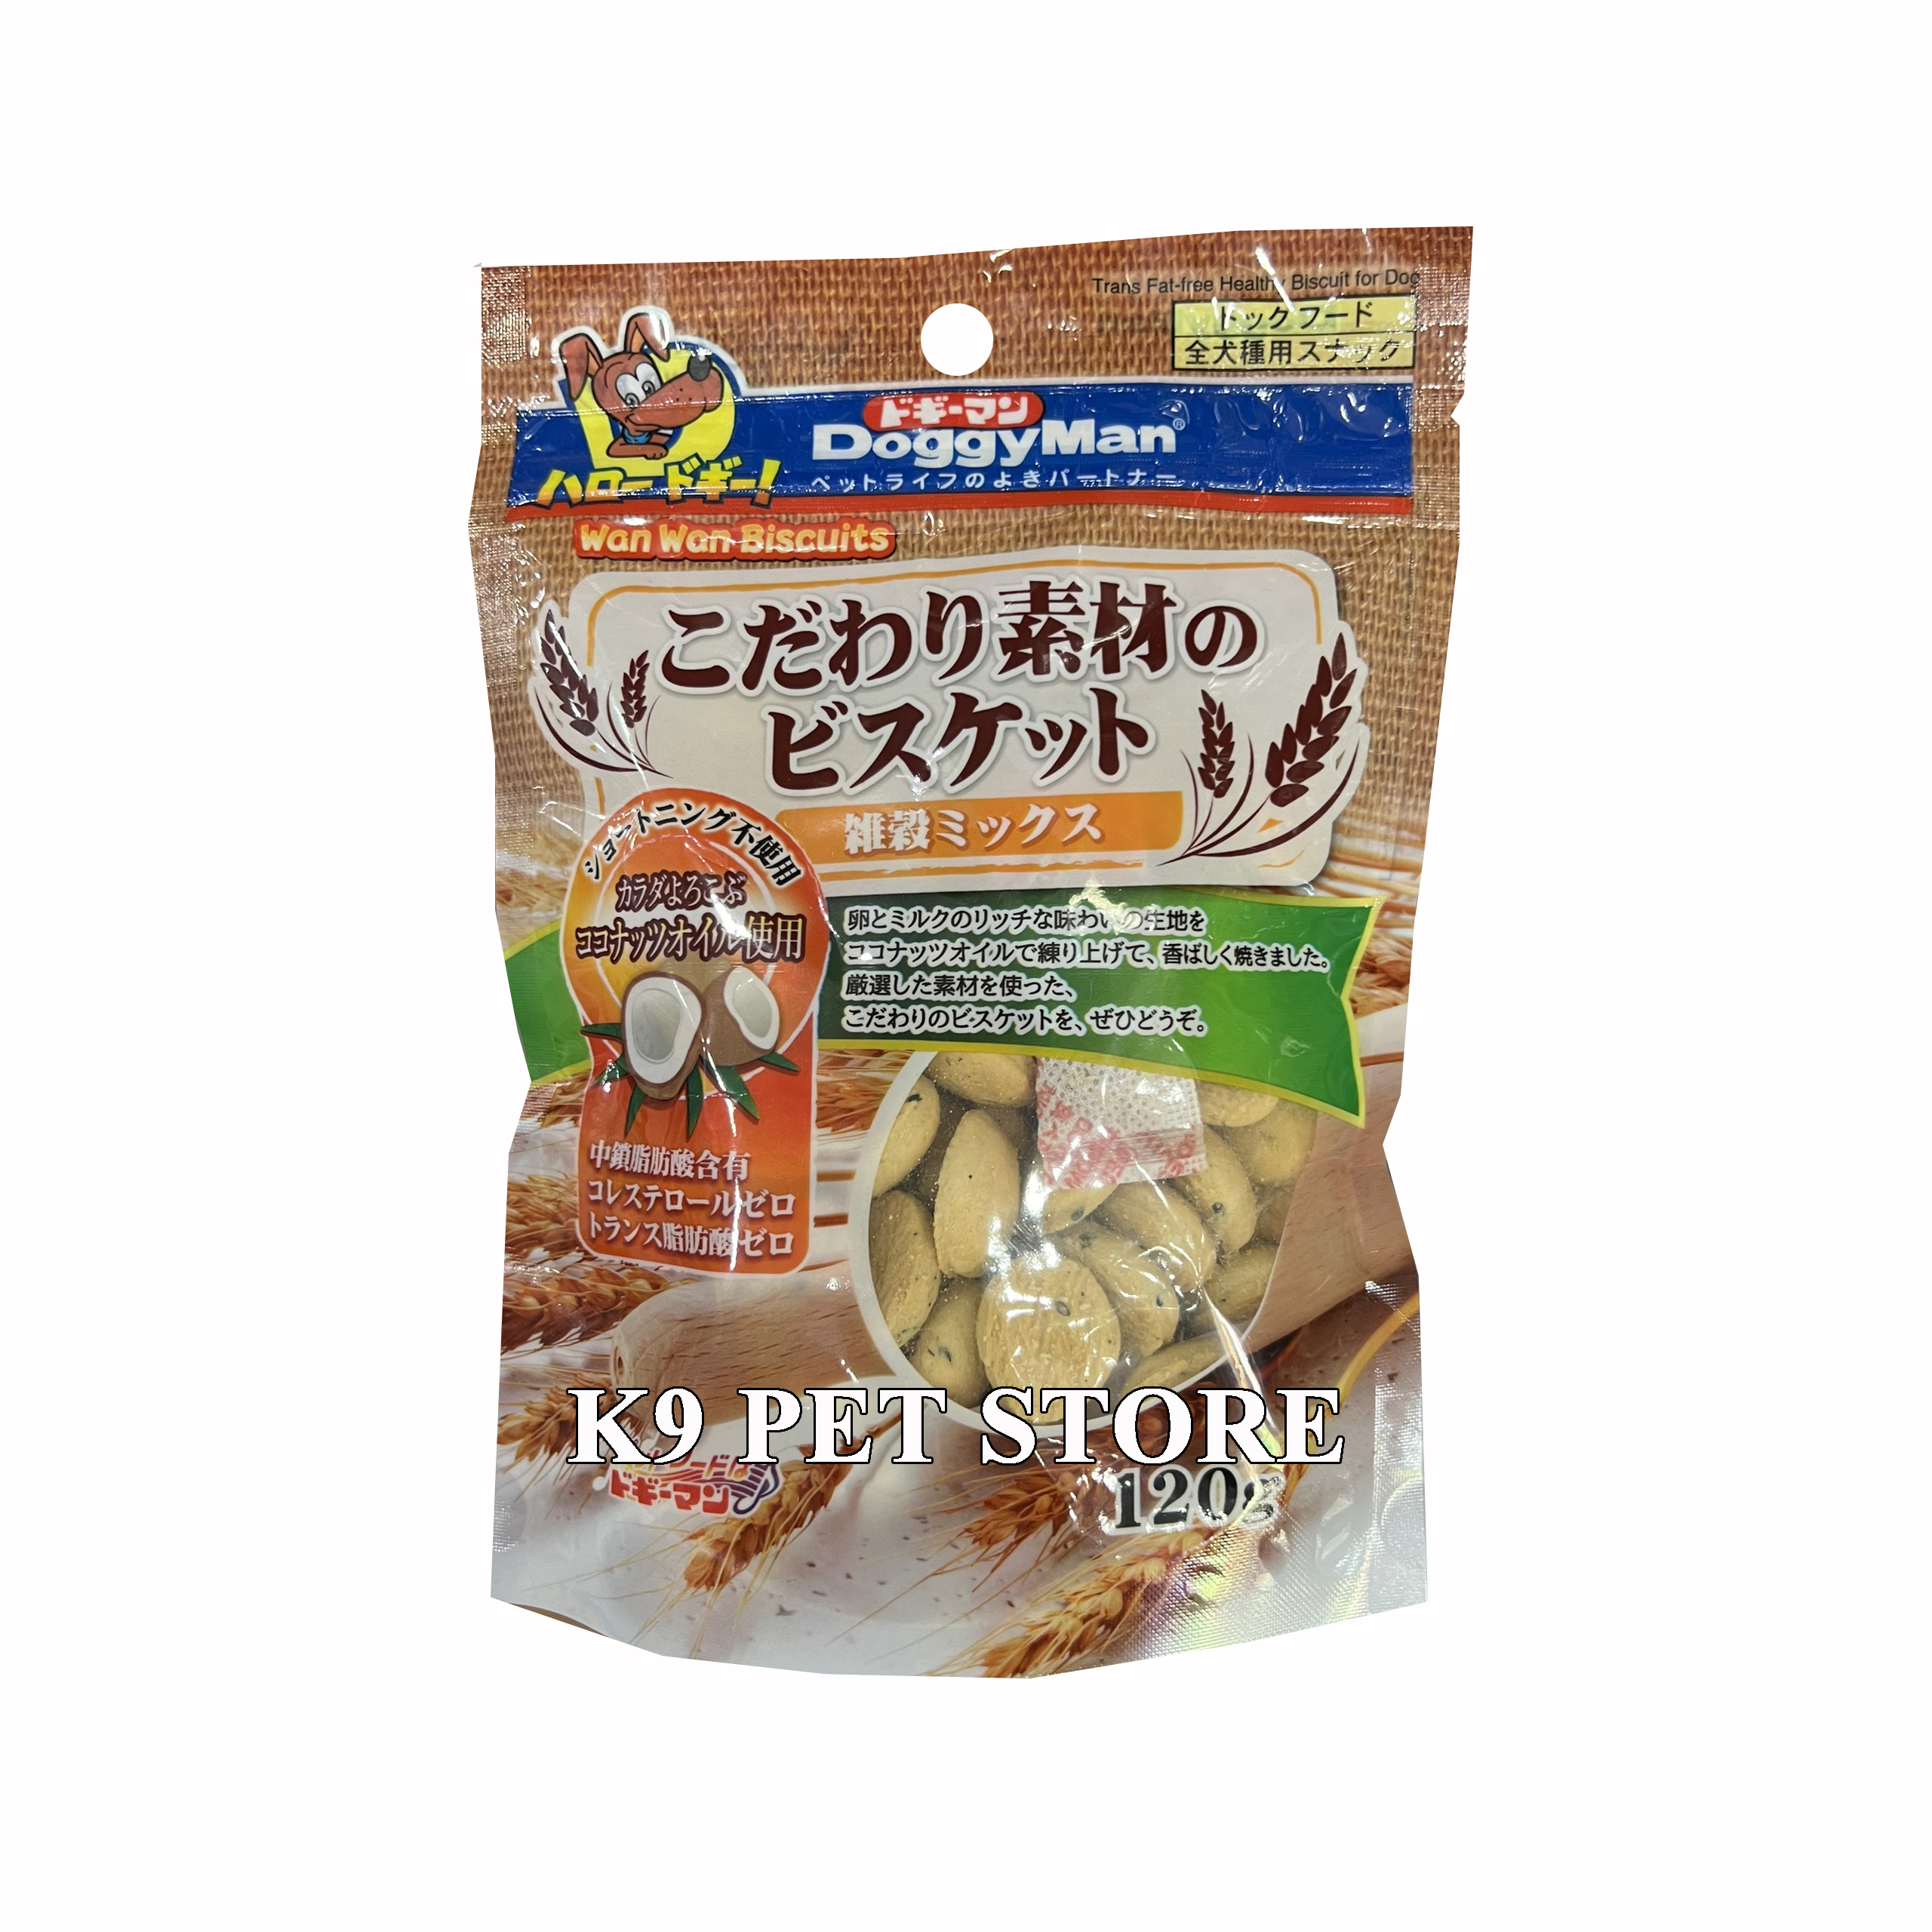 Doggy Man - Bánh quy dừa 120g